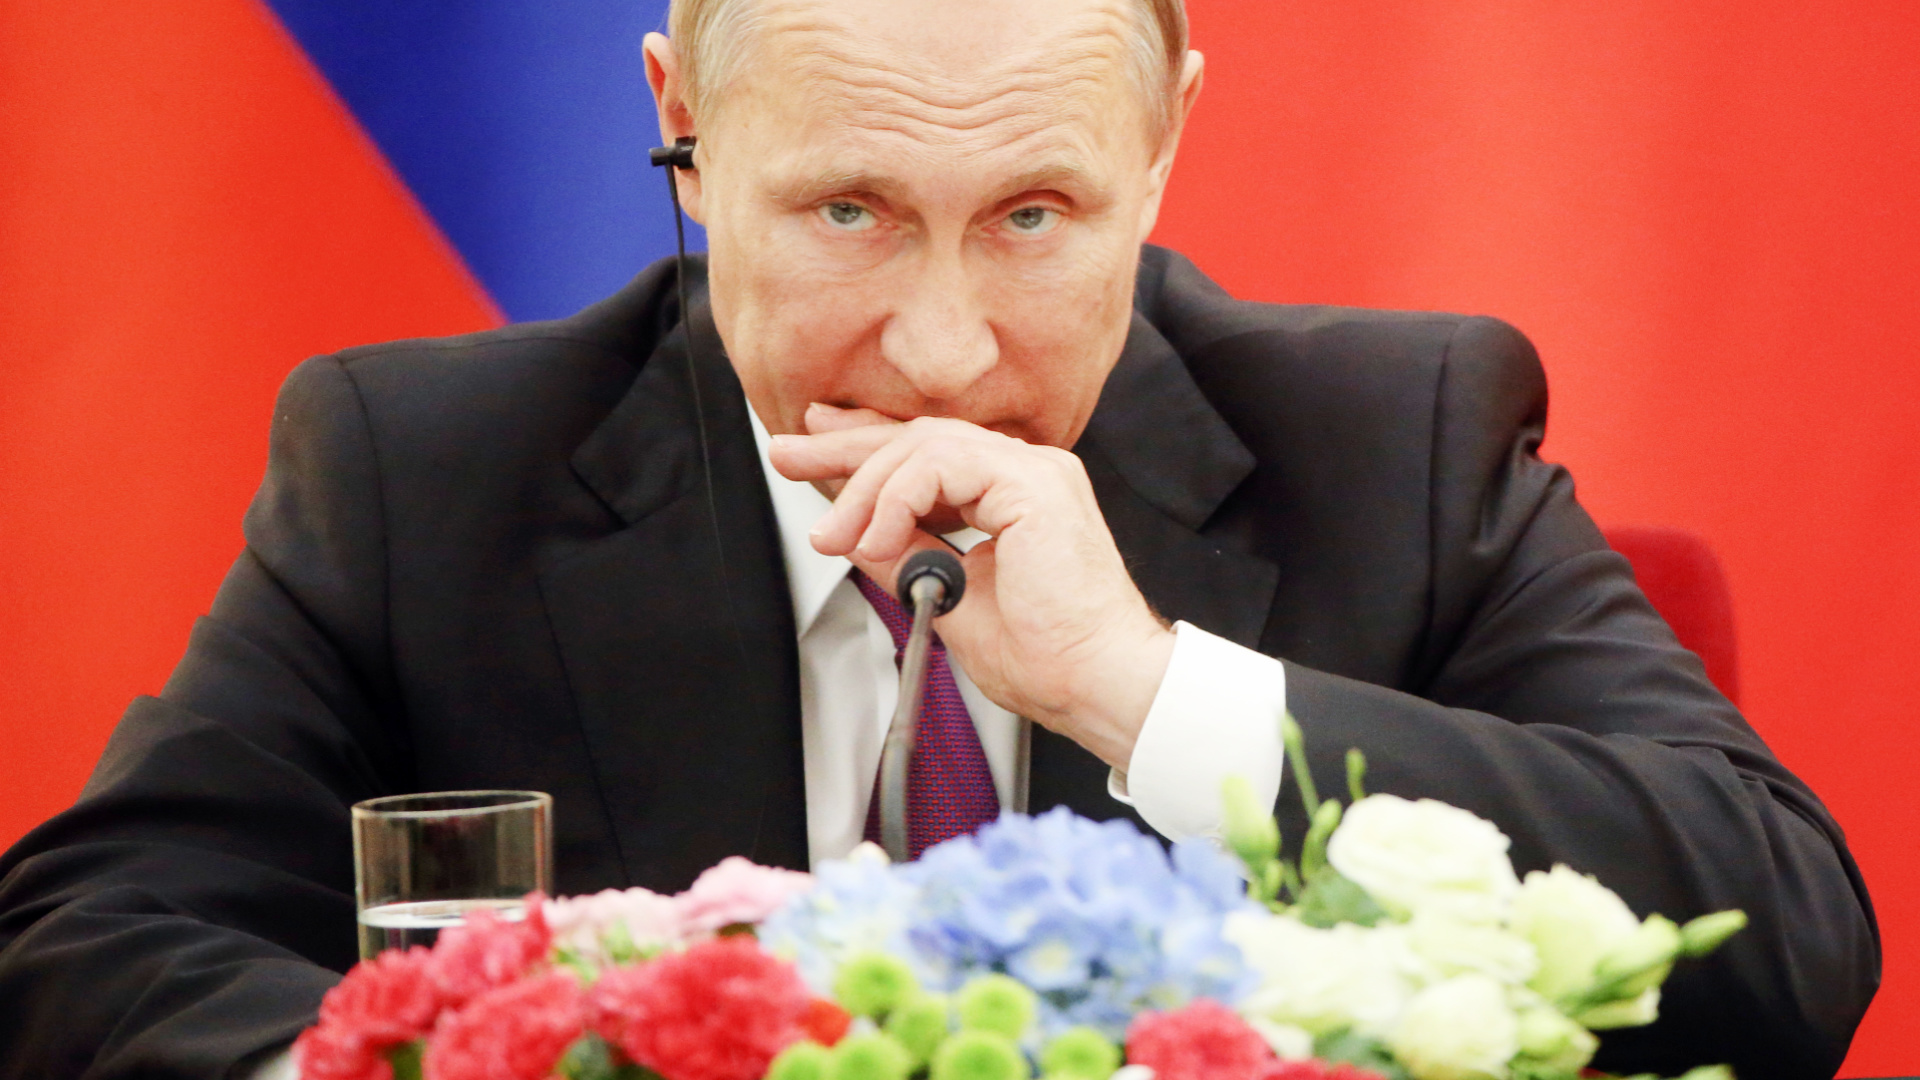 La decisione cinese che mette sotto scacco Putin e che potrebbe cambiare il corso della guerra